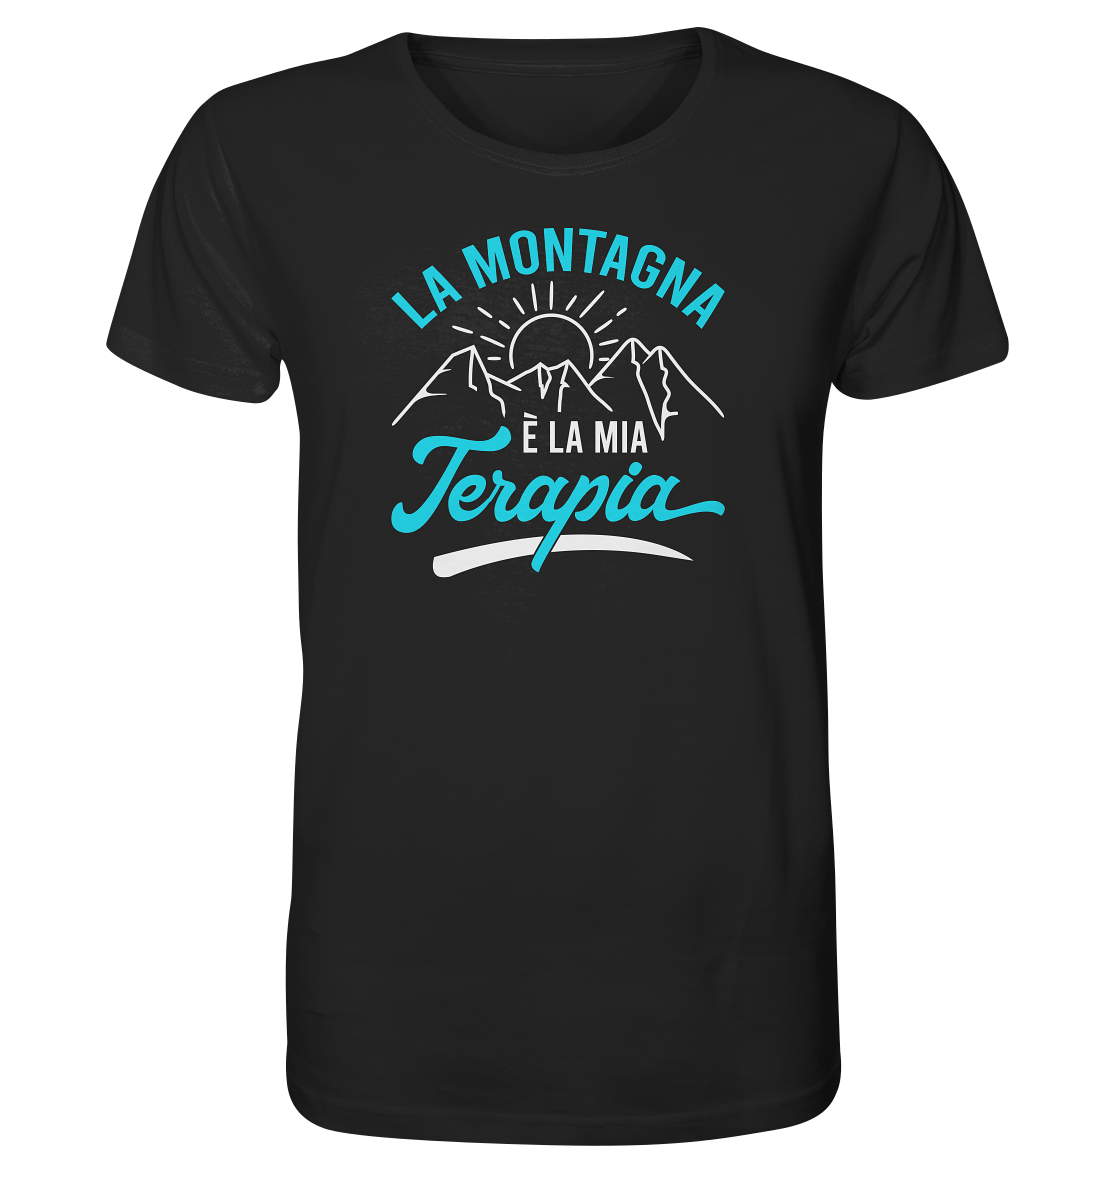 La montagna è la mia terapia - Organic Shirt